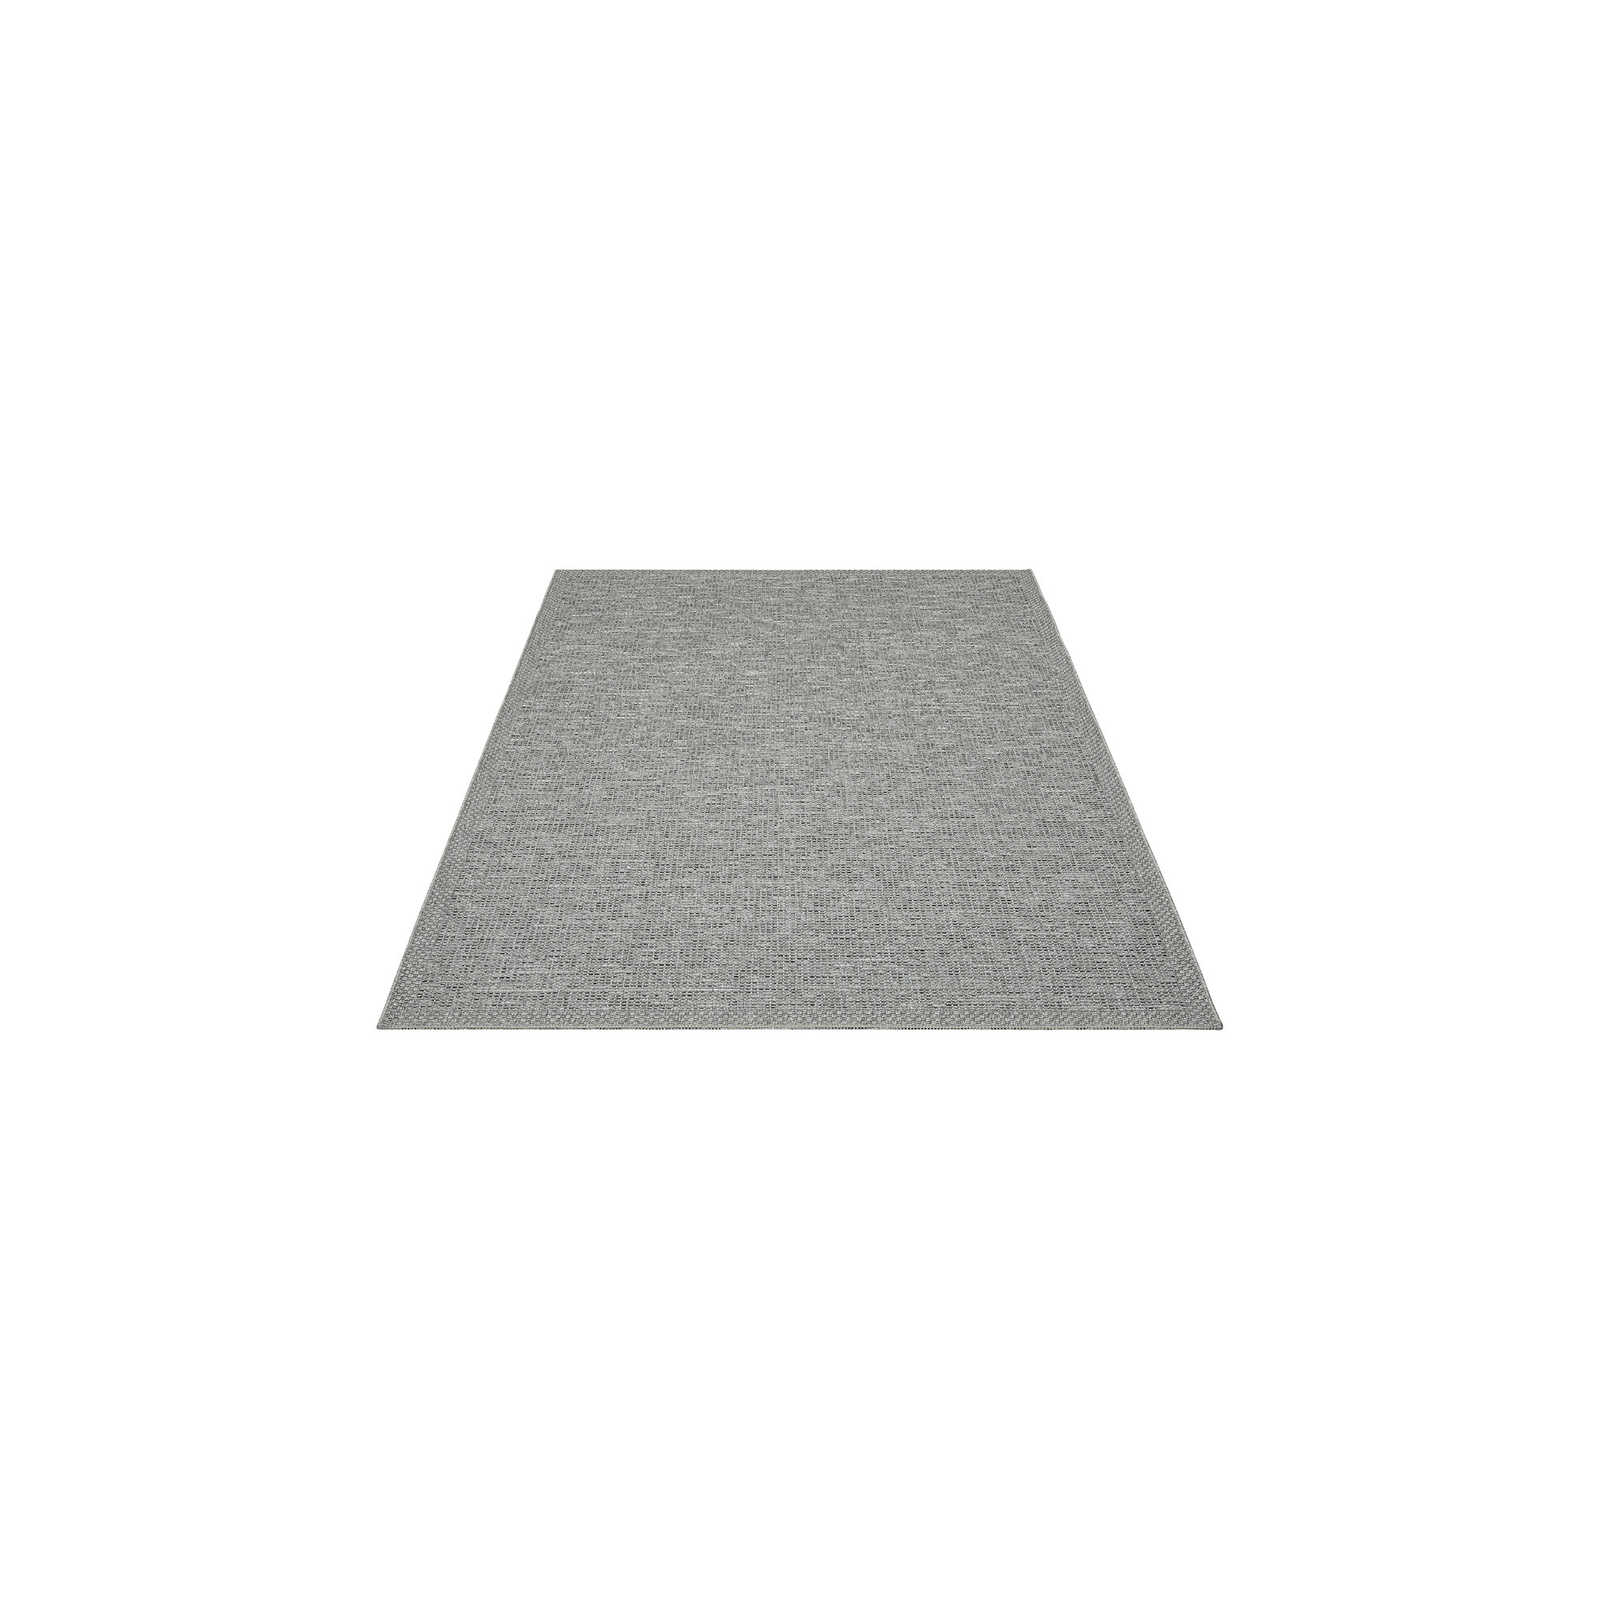 Eenvoudig vloerkleed voor buiten in grijs - 160 x 120 cm
